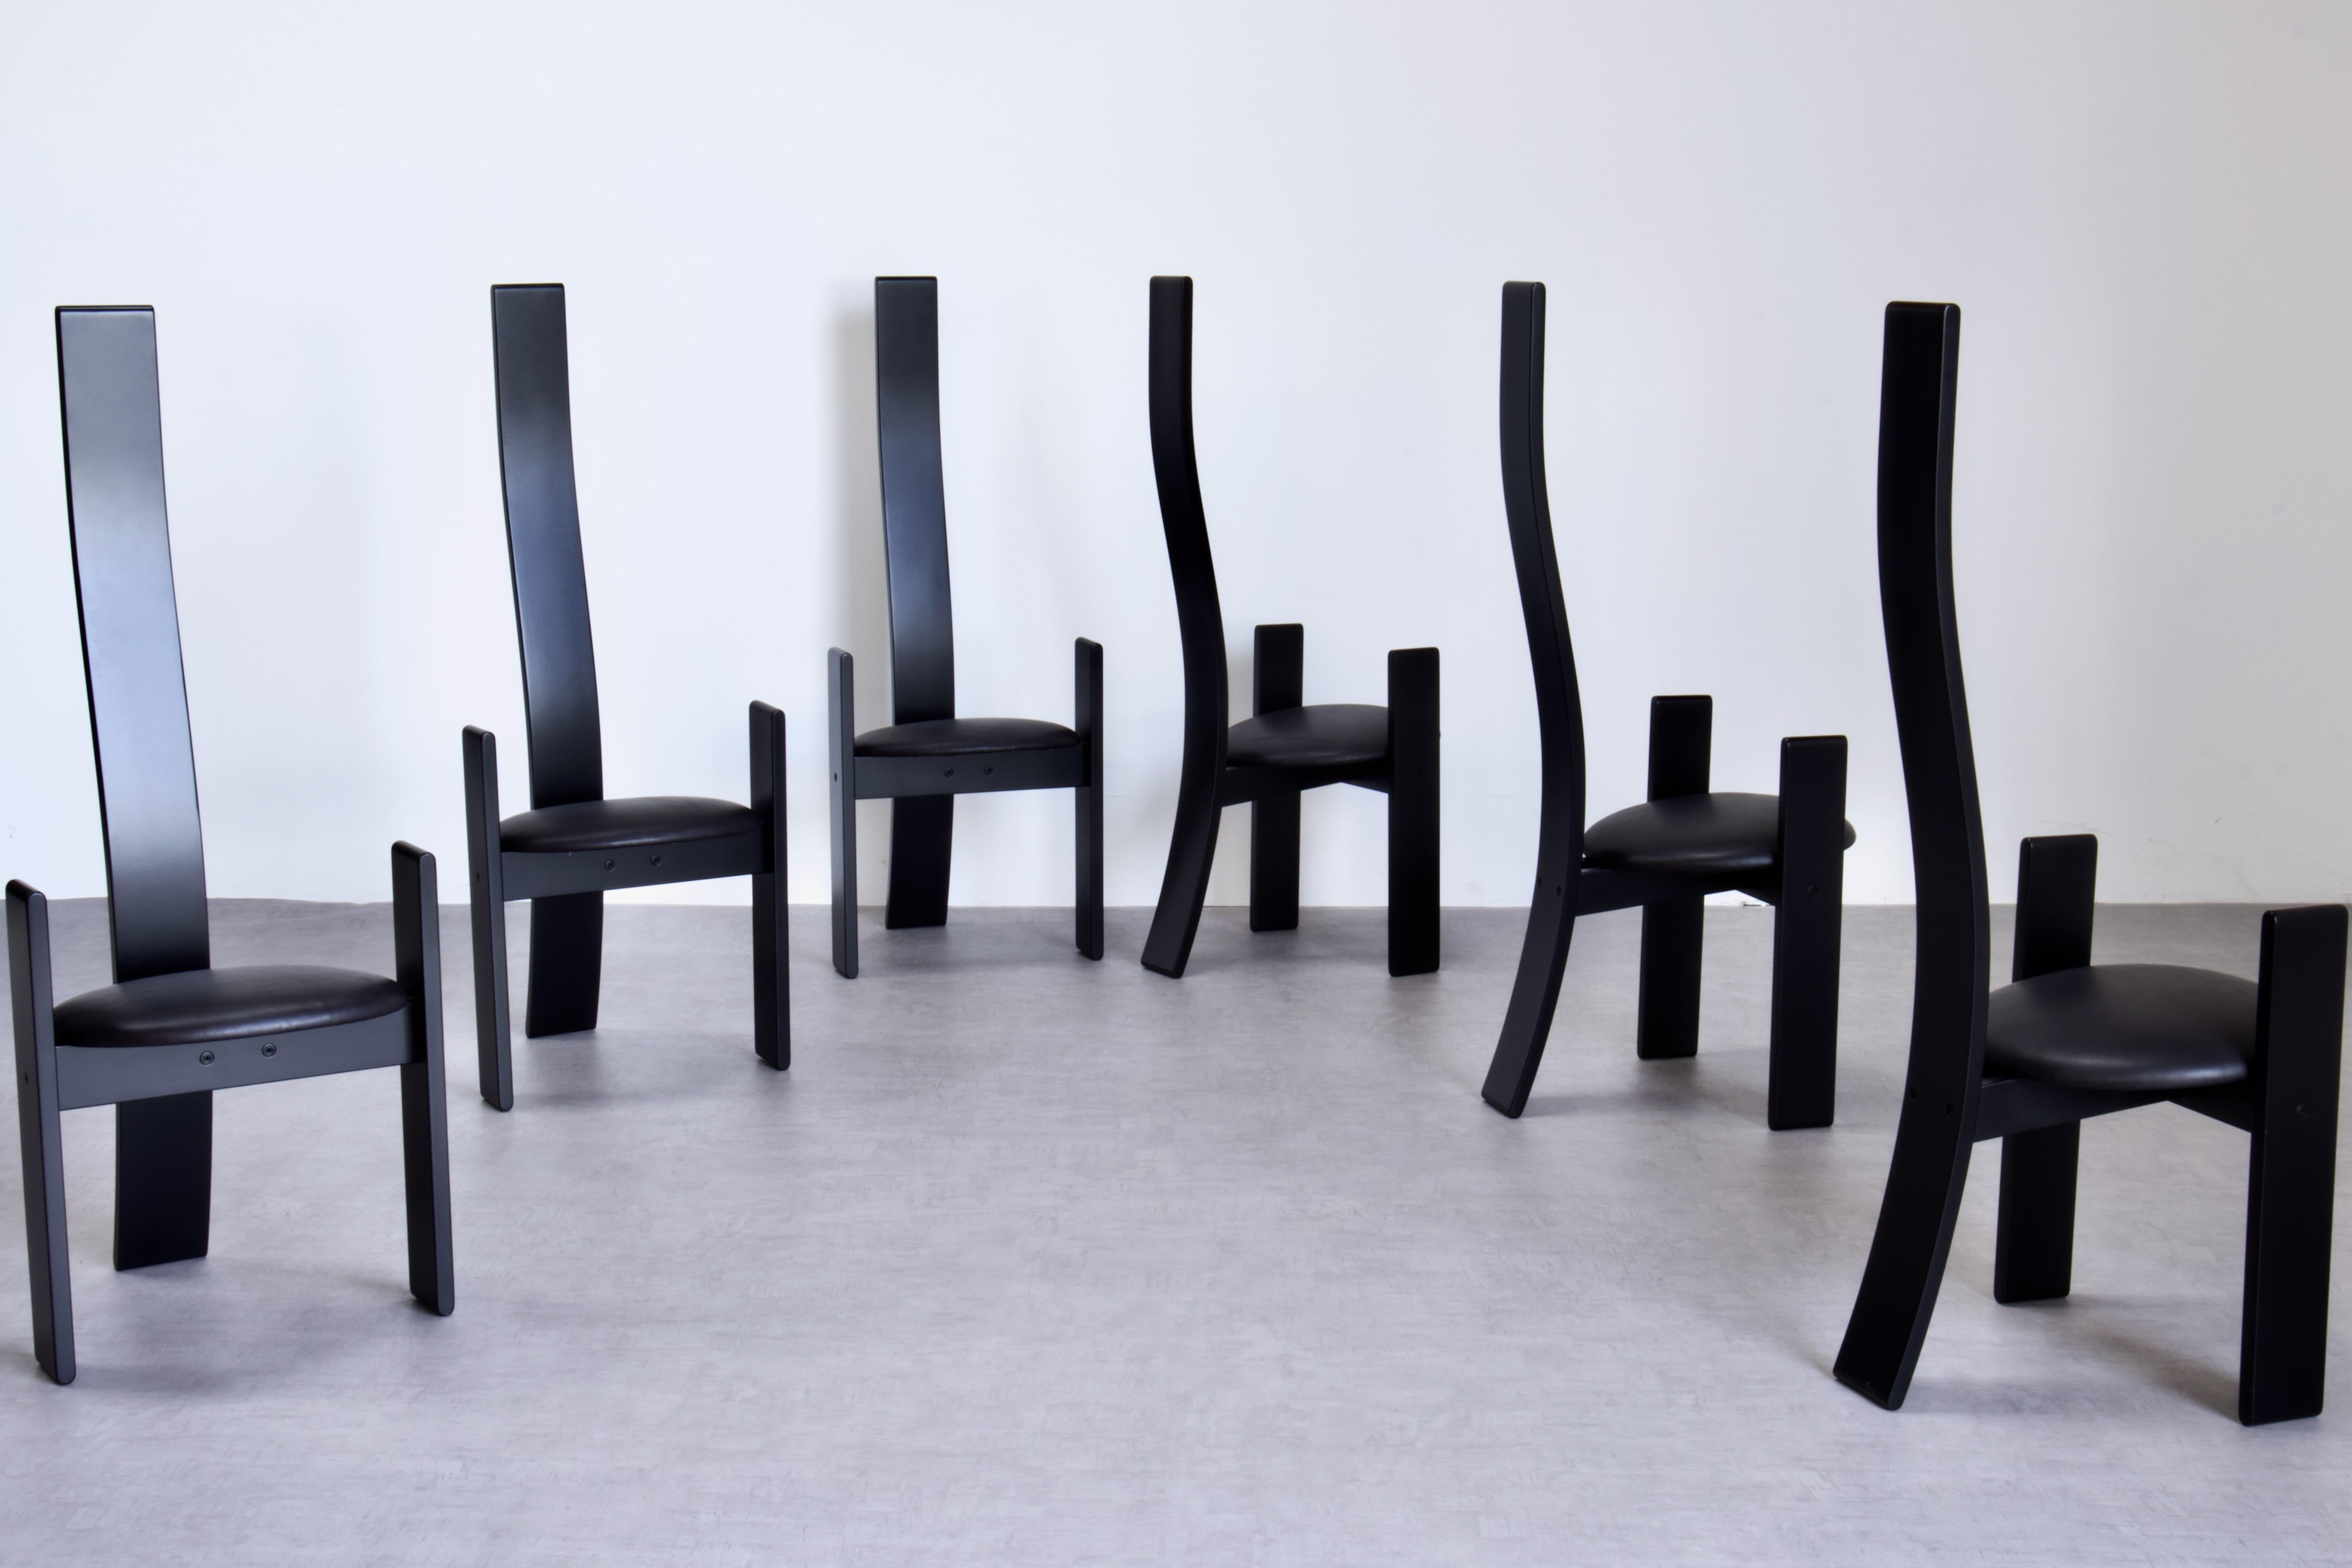 6 Stühle mit hoher Rückenlehne SD51 Golem von Vico Magistretti für Poggi, 1969 Italien. Dieser postmoderne Stuhl spielt mit der Ästhetik des Mid-Century Modern von Carlo, Afra und Tobia Scarpa. 

Die Stühle sind aus gebogenem Buchenholz gefertigt